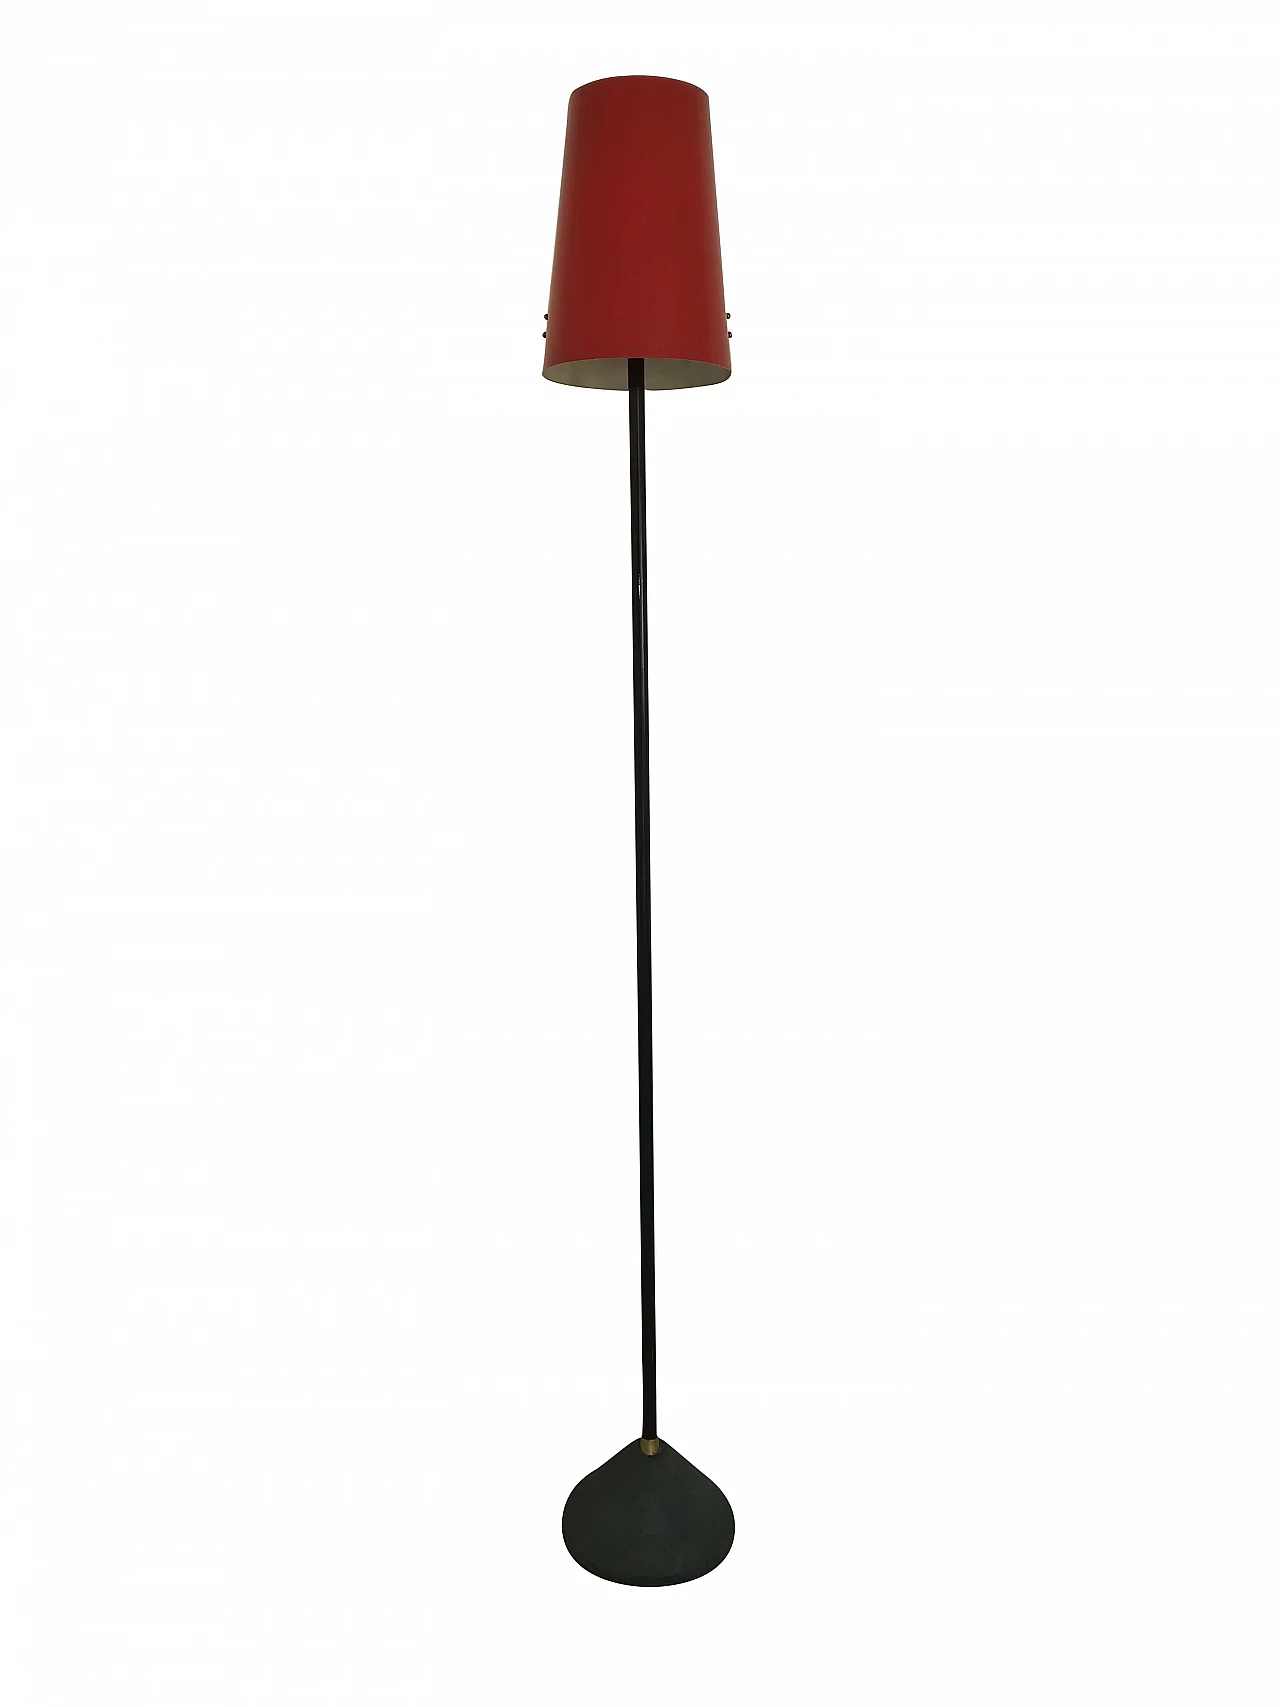 Stilux Milano floor lamp, 1950s 1104754